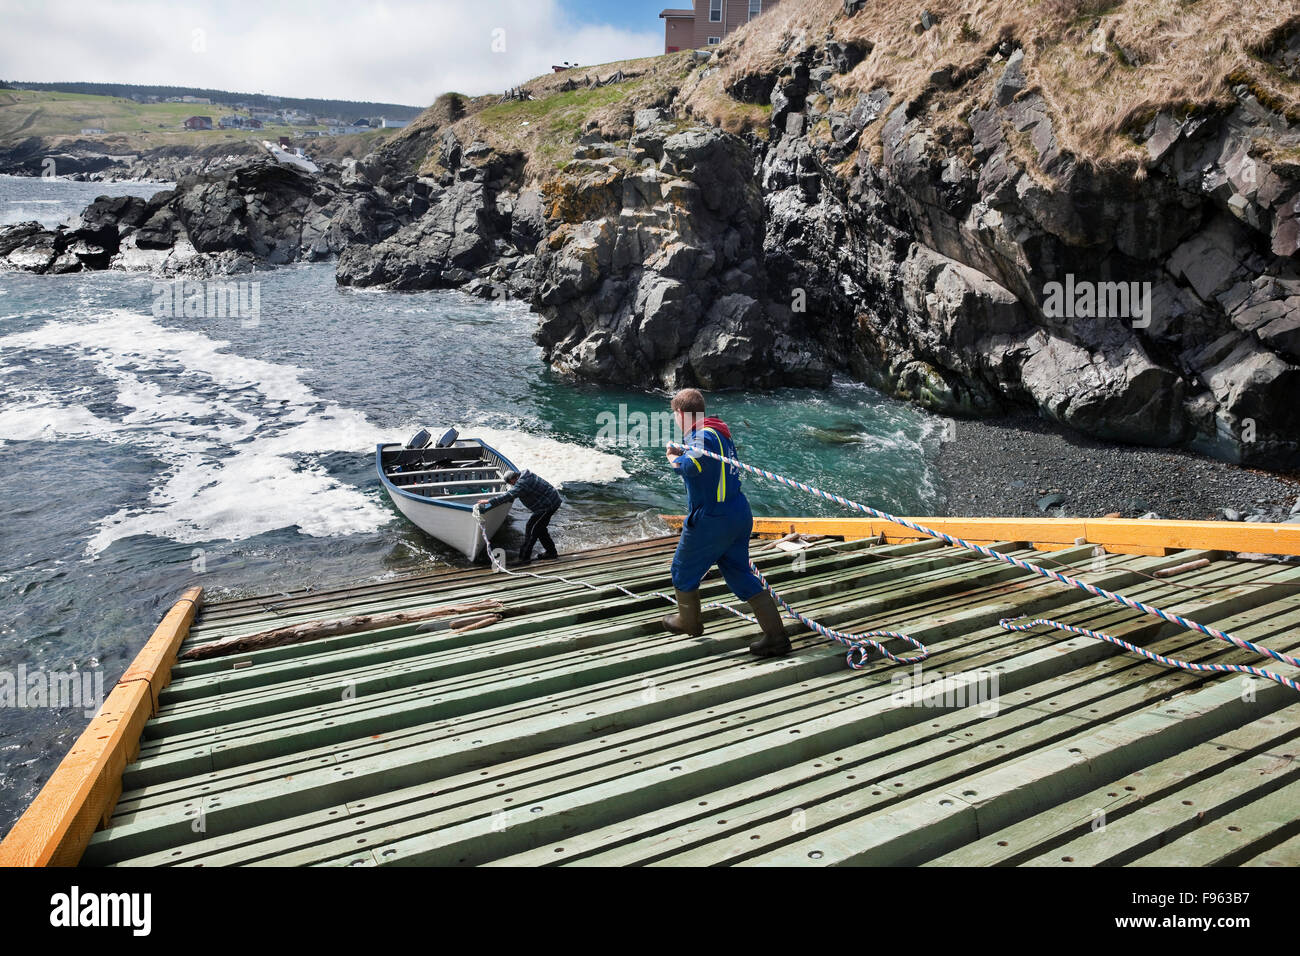 Deux pêcheurs sur une rampe (rampe de bateau) la préparation de leur bateau pour une sortie, Pouch Cove, Terre-Neuve, Canada Banque D'Images